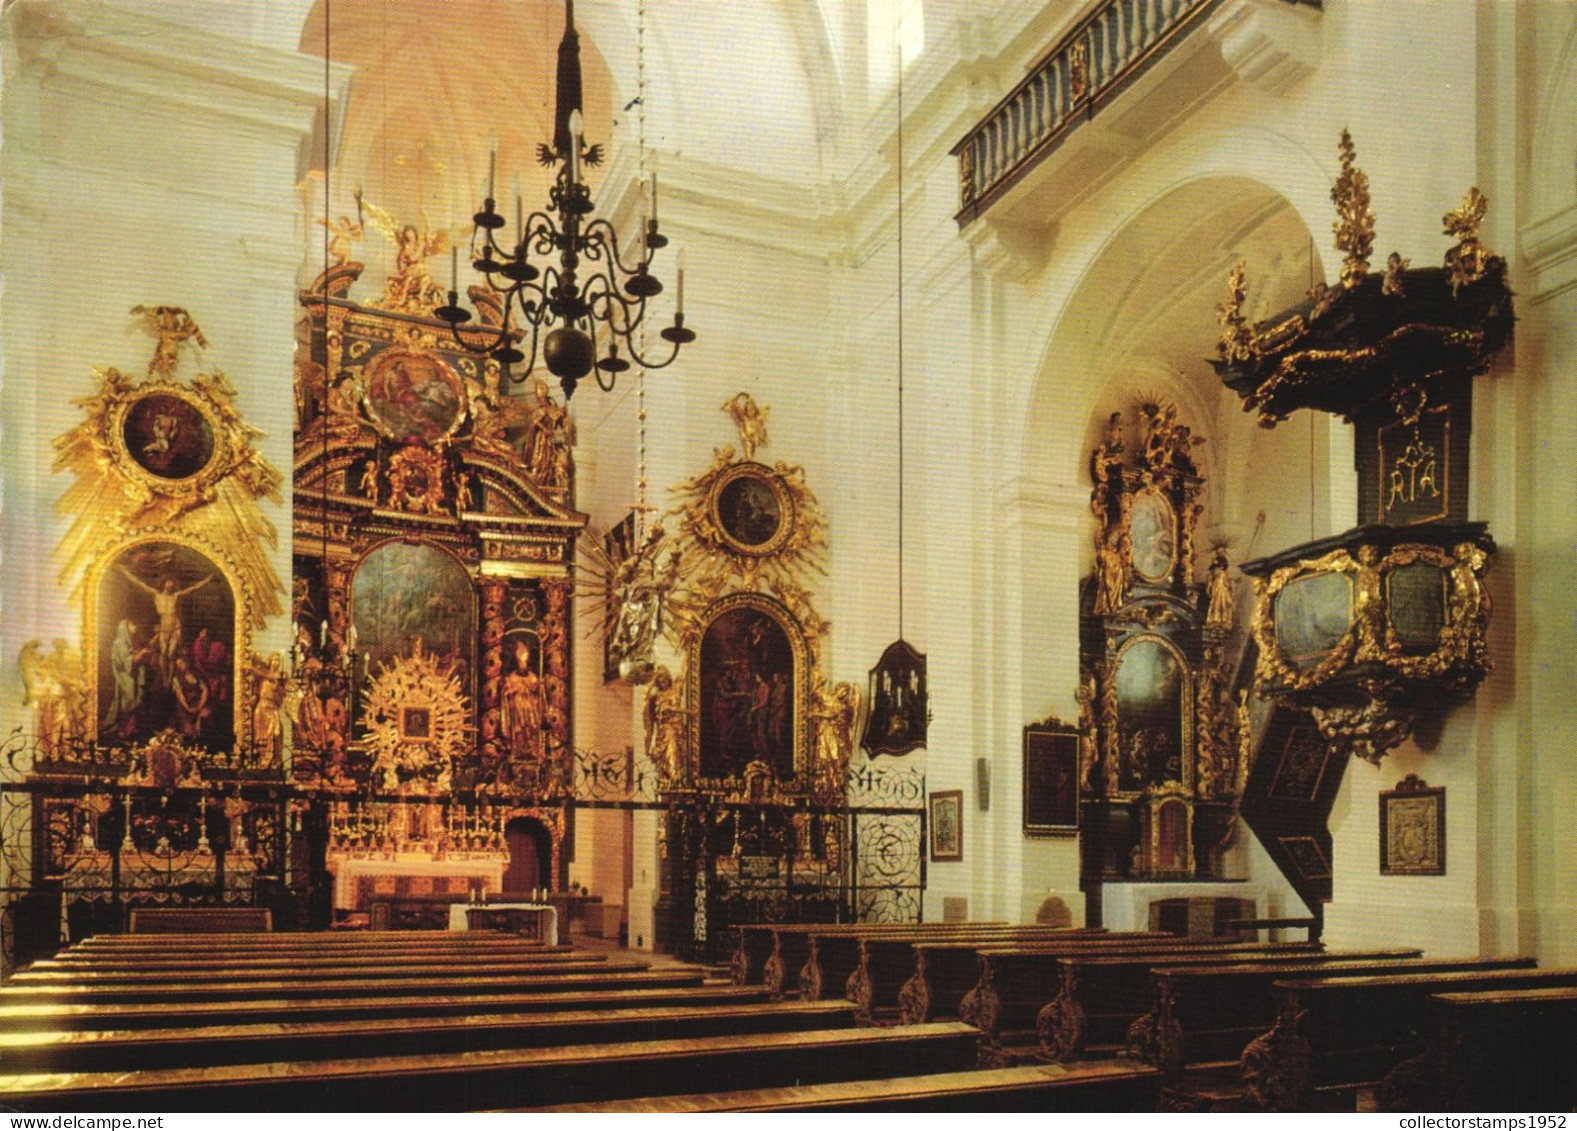 SALZBURG, CHURCH, ARCHITECTURE, INTERIOR, AUSTRIA, POSTCARD - Salzburg Stadt